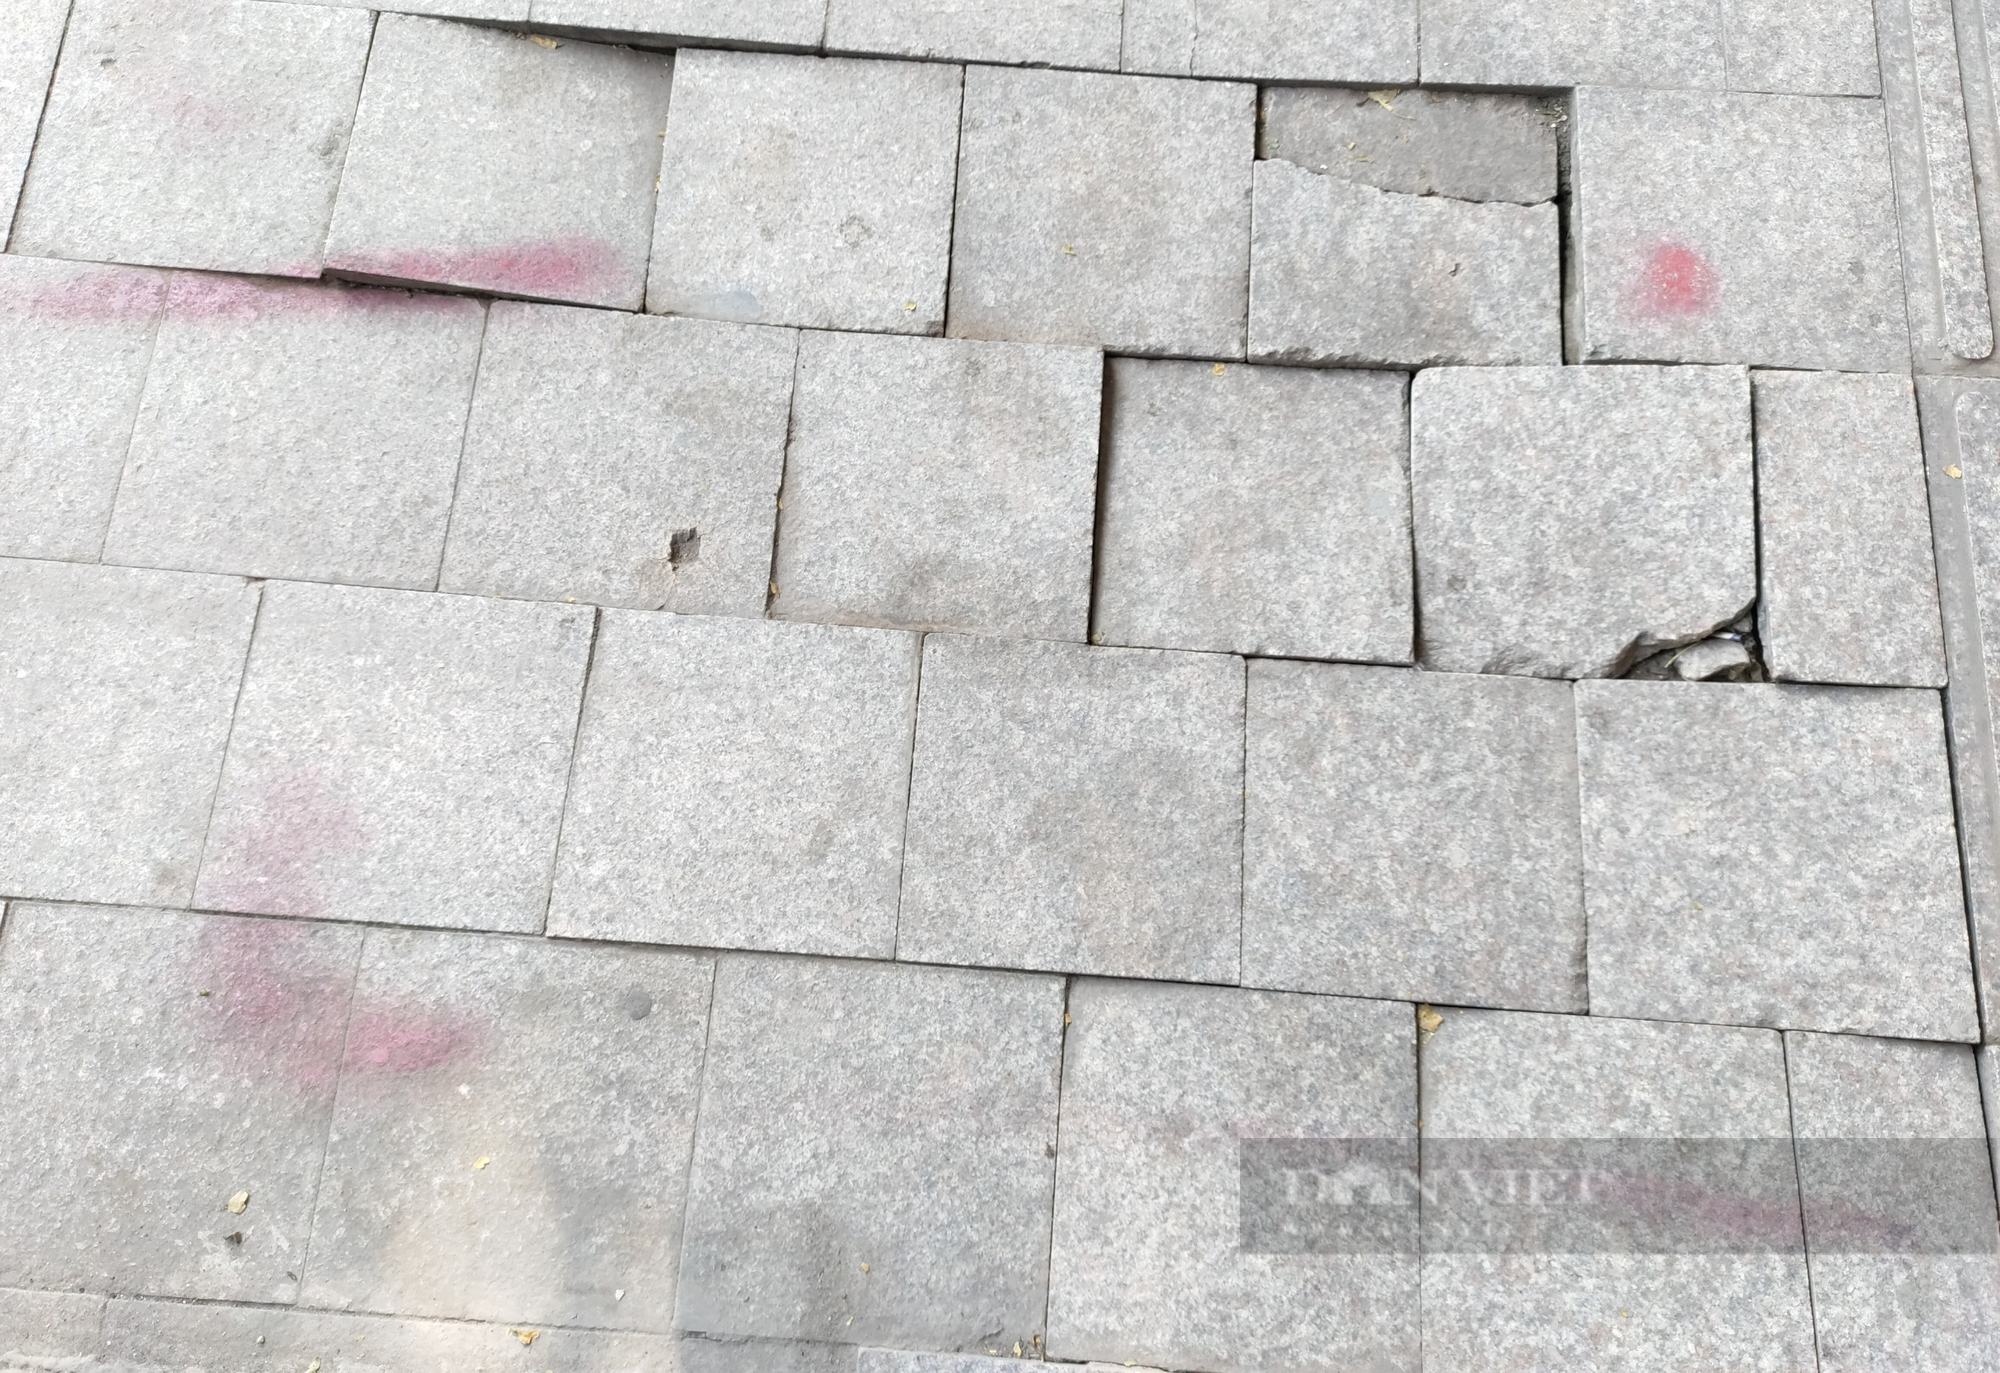 Đá tự nhiên có độ bền 70 năm vỡ nát trên con phố kiểu mẫu ở Hà Nội - Ảnh 2.